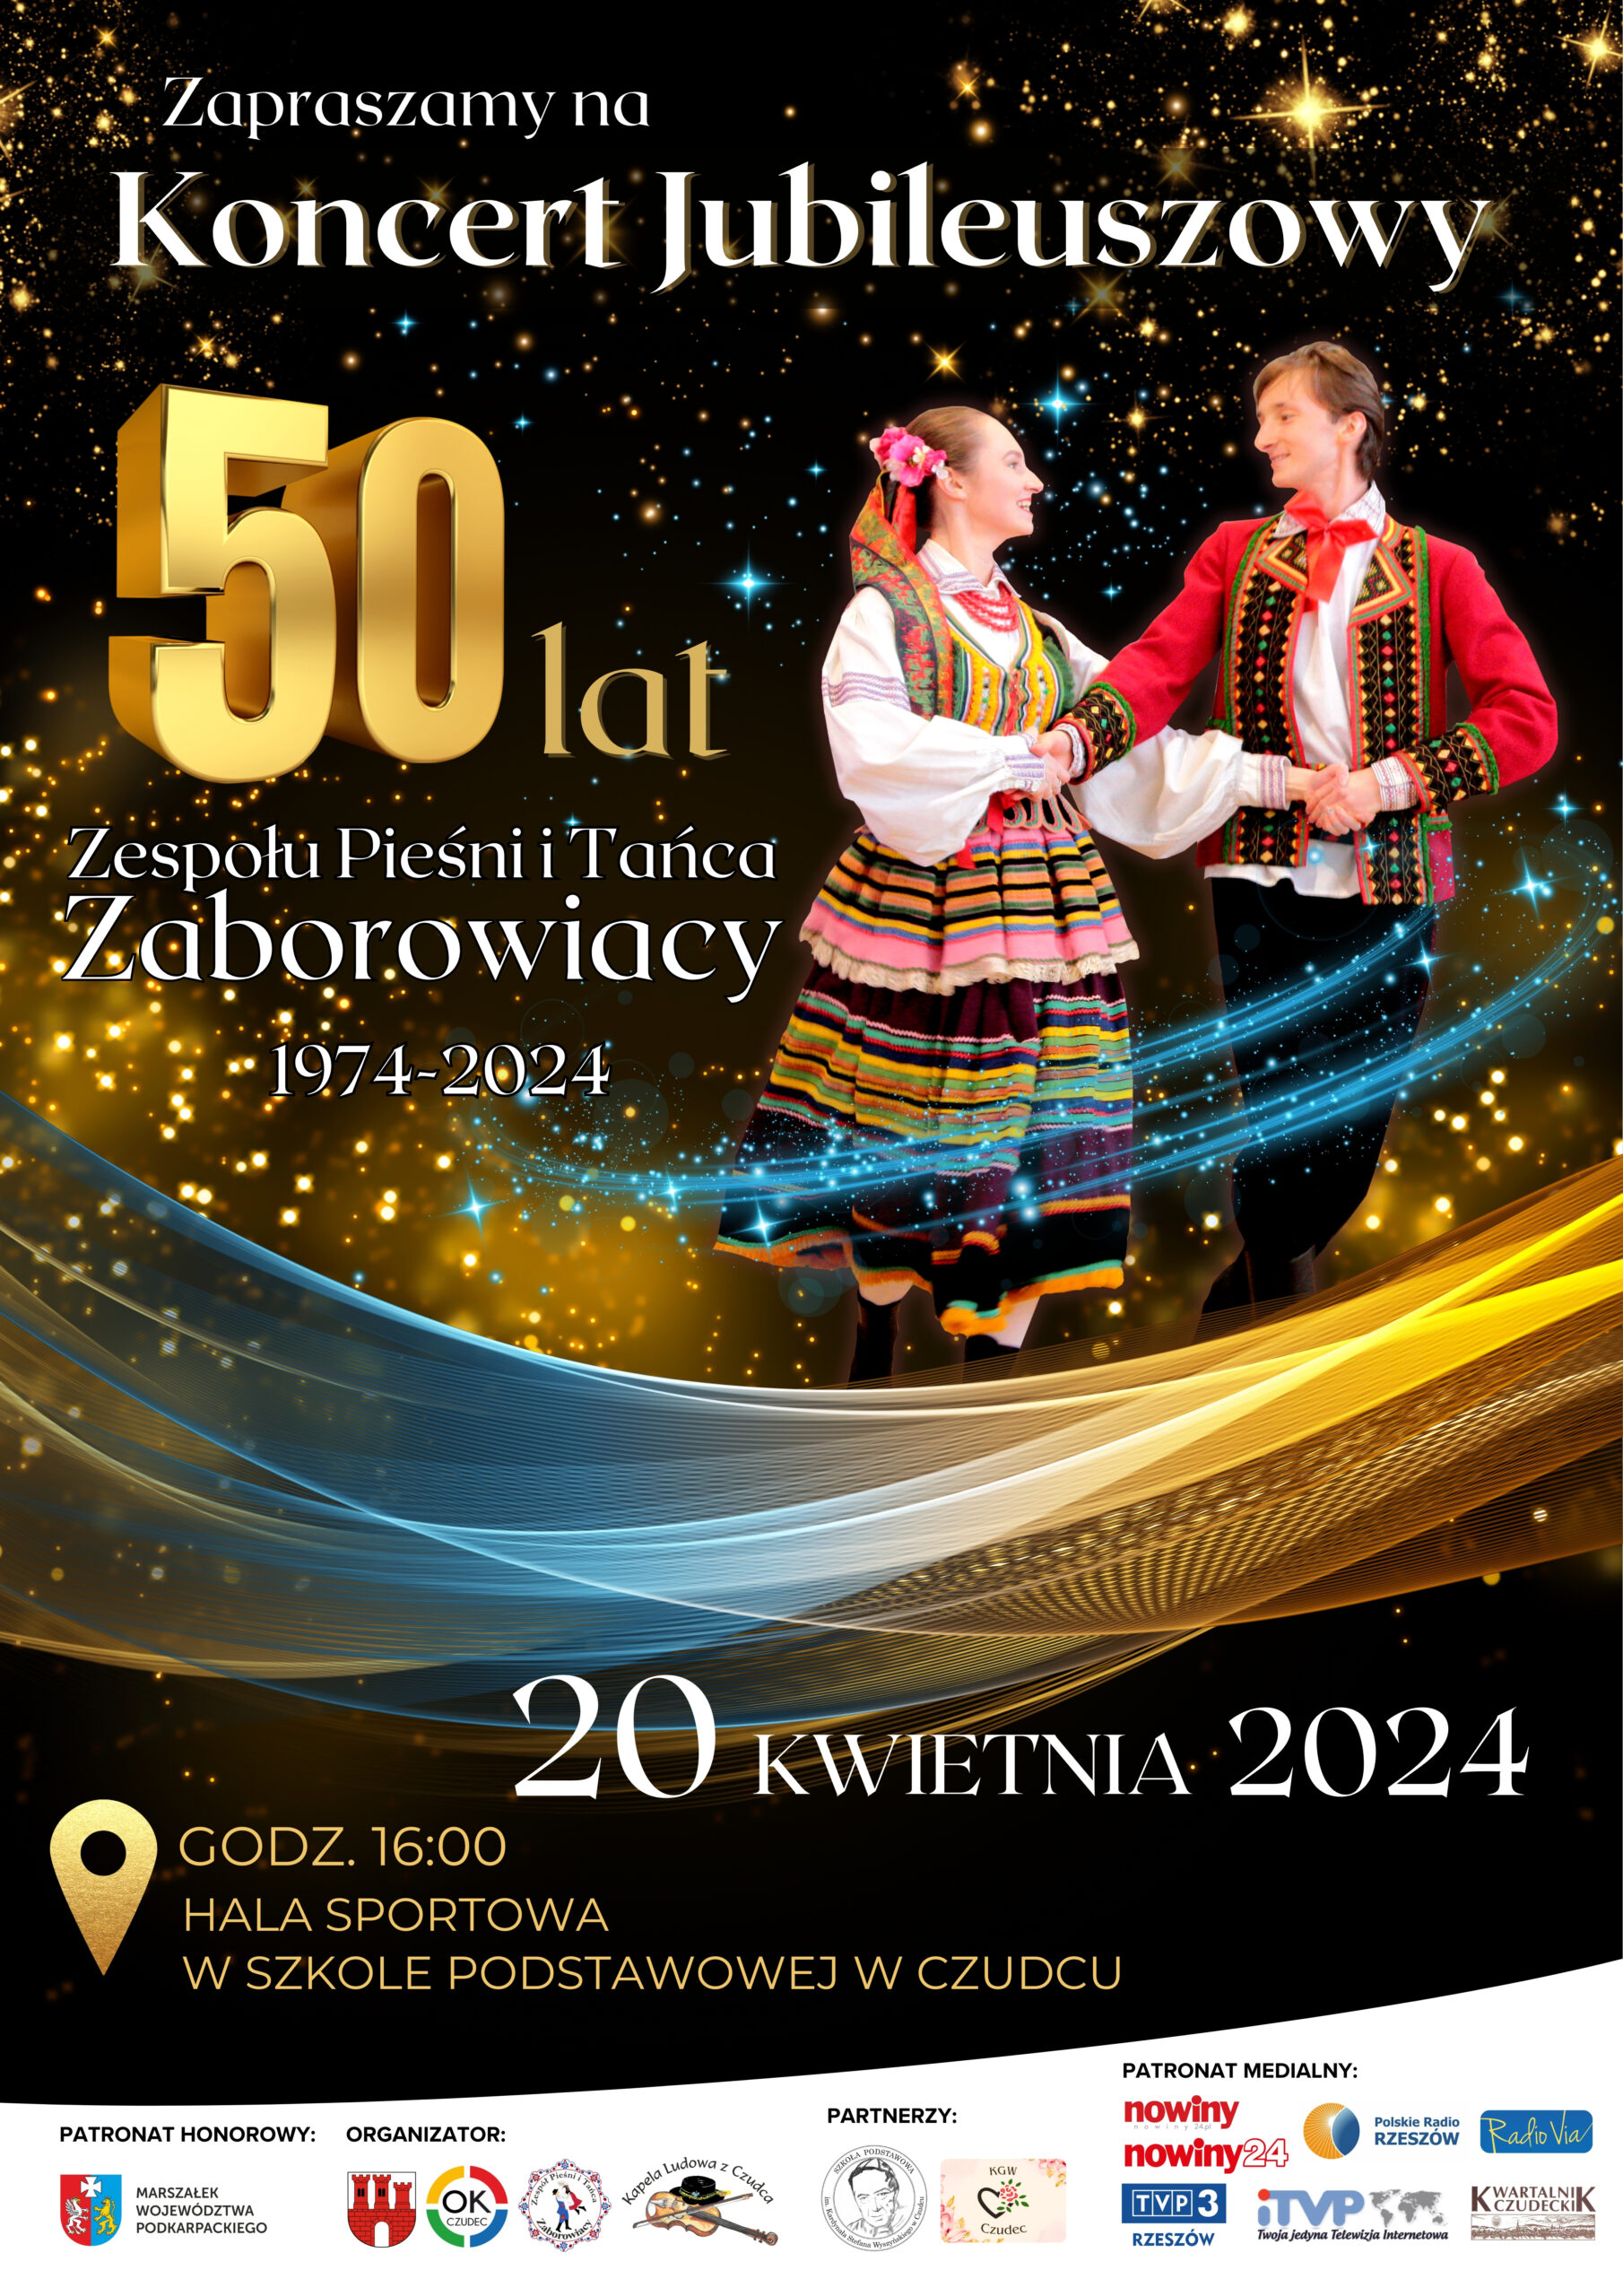 Plakat koncert jubileuszowy ZPiT Zaborowiacy scaled